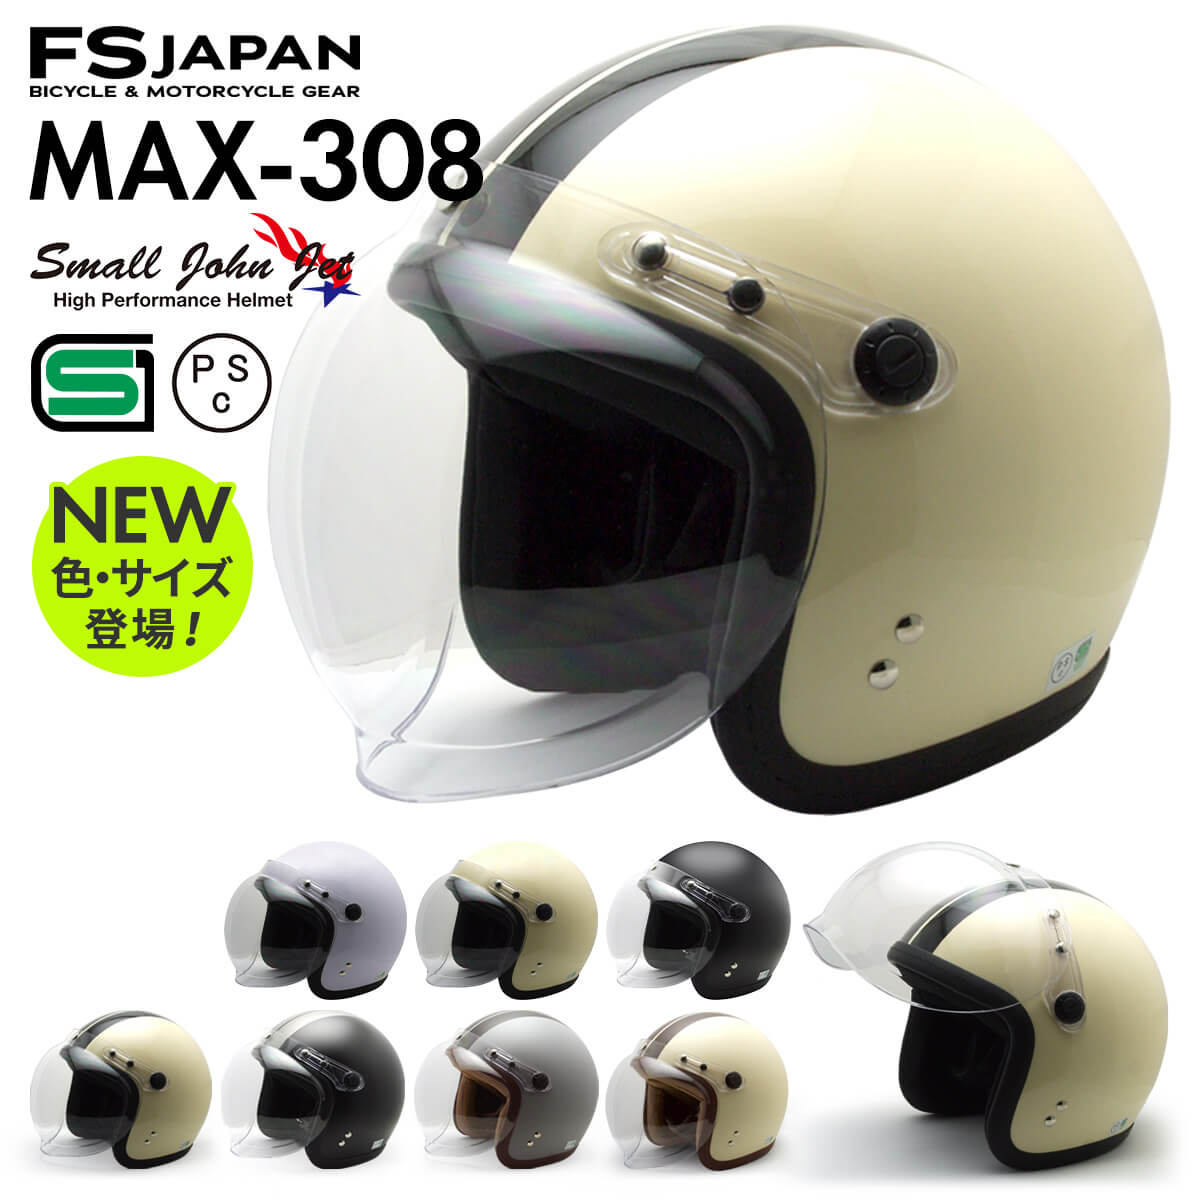 バイク ヘルメット ジェット MAX-308 FS-JAPAN 石野商会 スモールジョンジェット / SG規格 PSC規格 / バイクヘルメット かっこいい アメリカン レトロ ビンテージ かわいい【P10】【RSL】